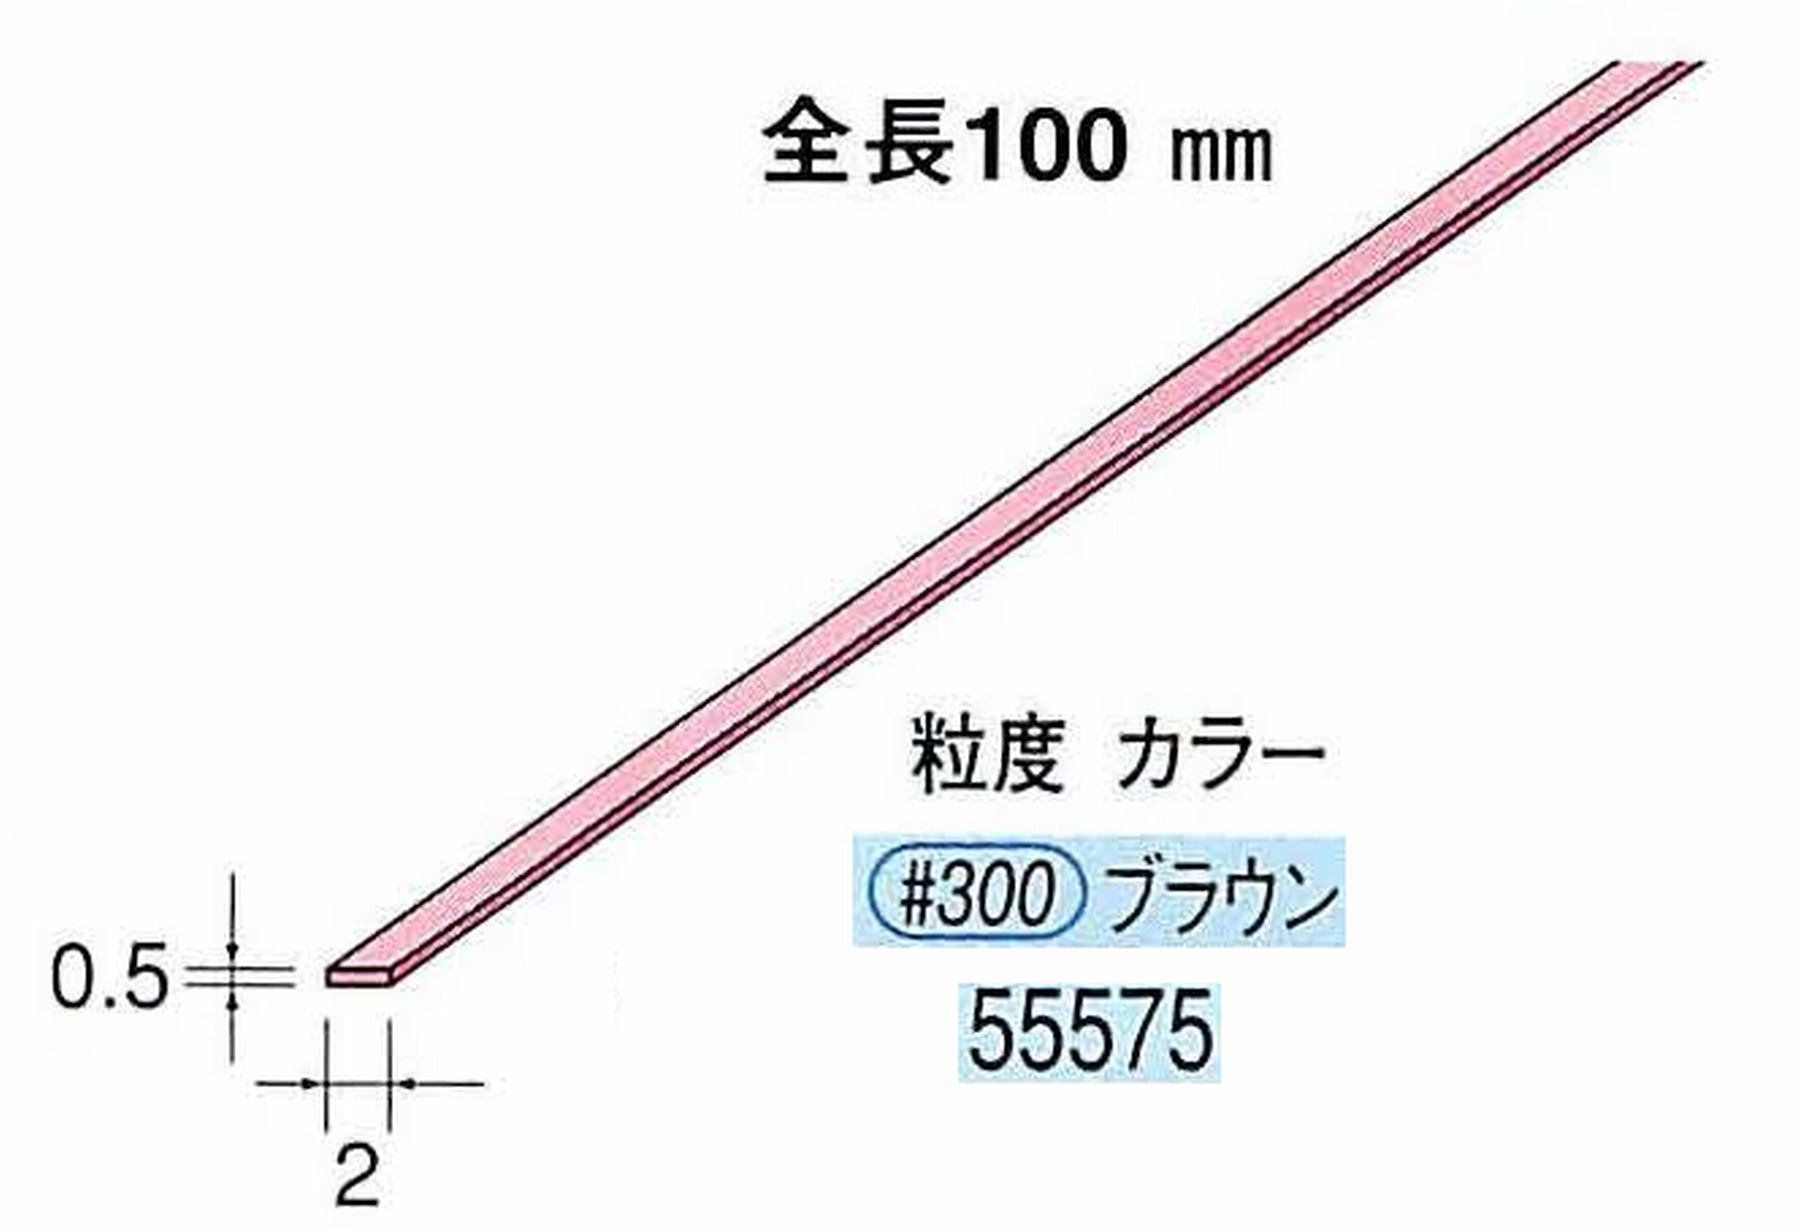 ナカニシ/NAKANISHI セラファイバー砥石 全長100mm ブラウン 55575